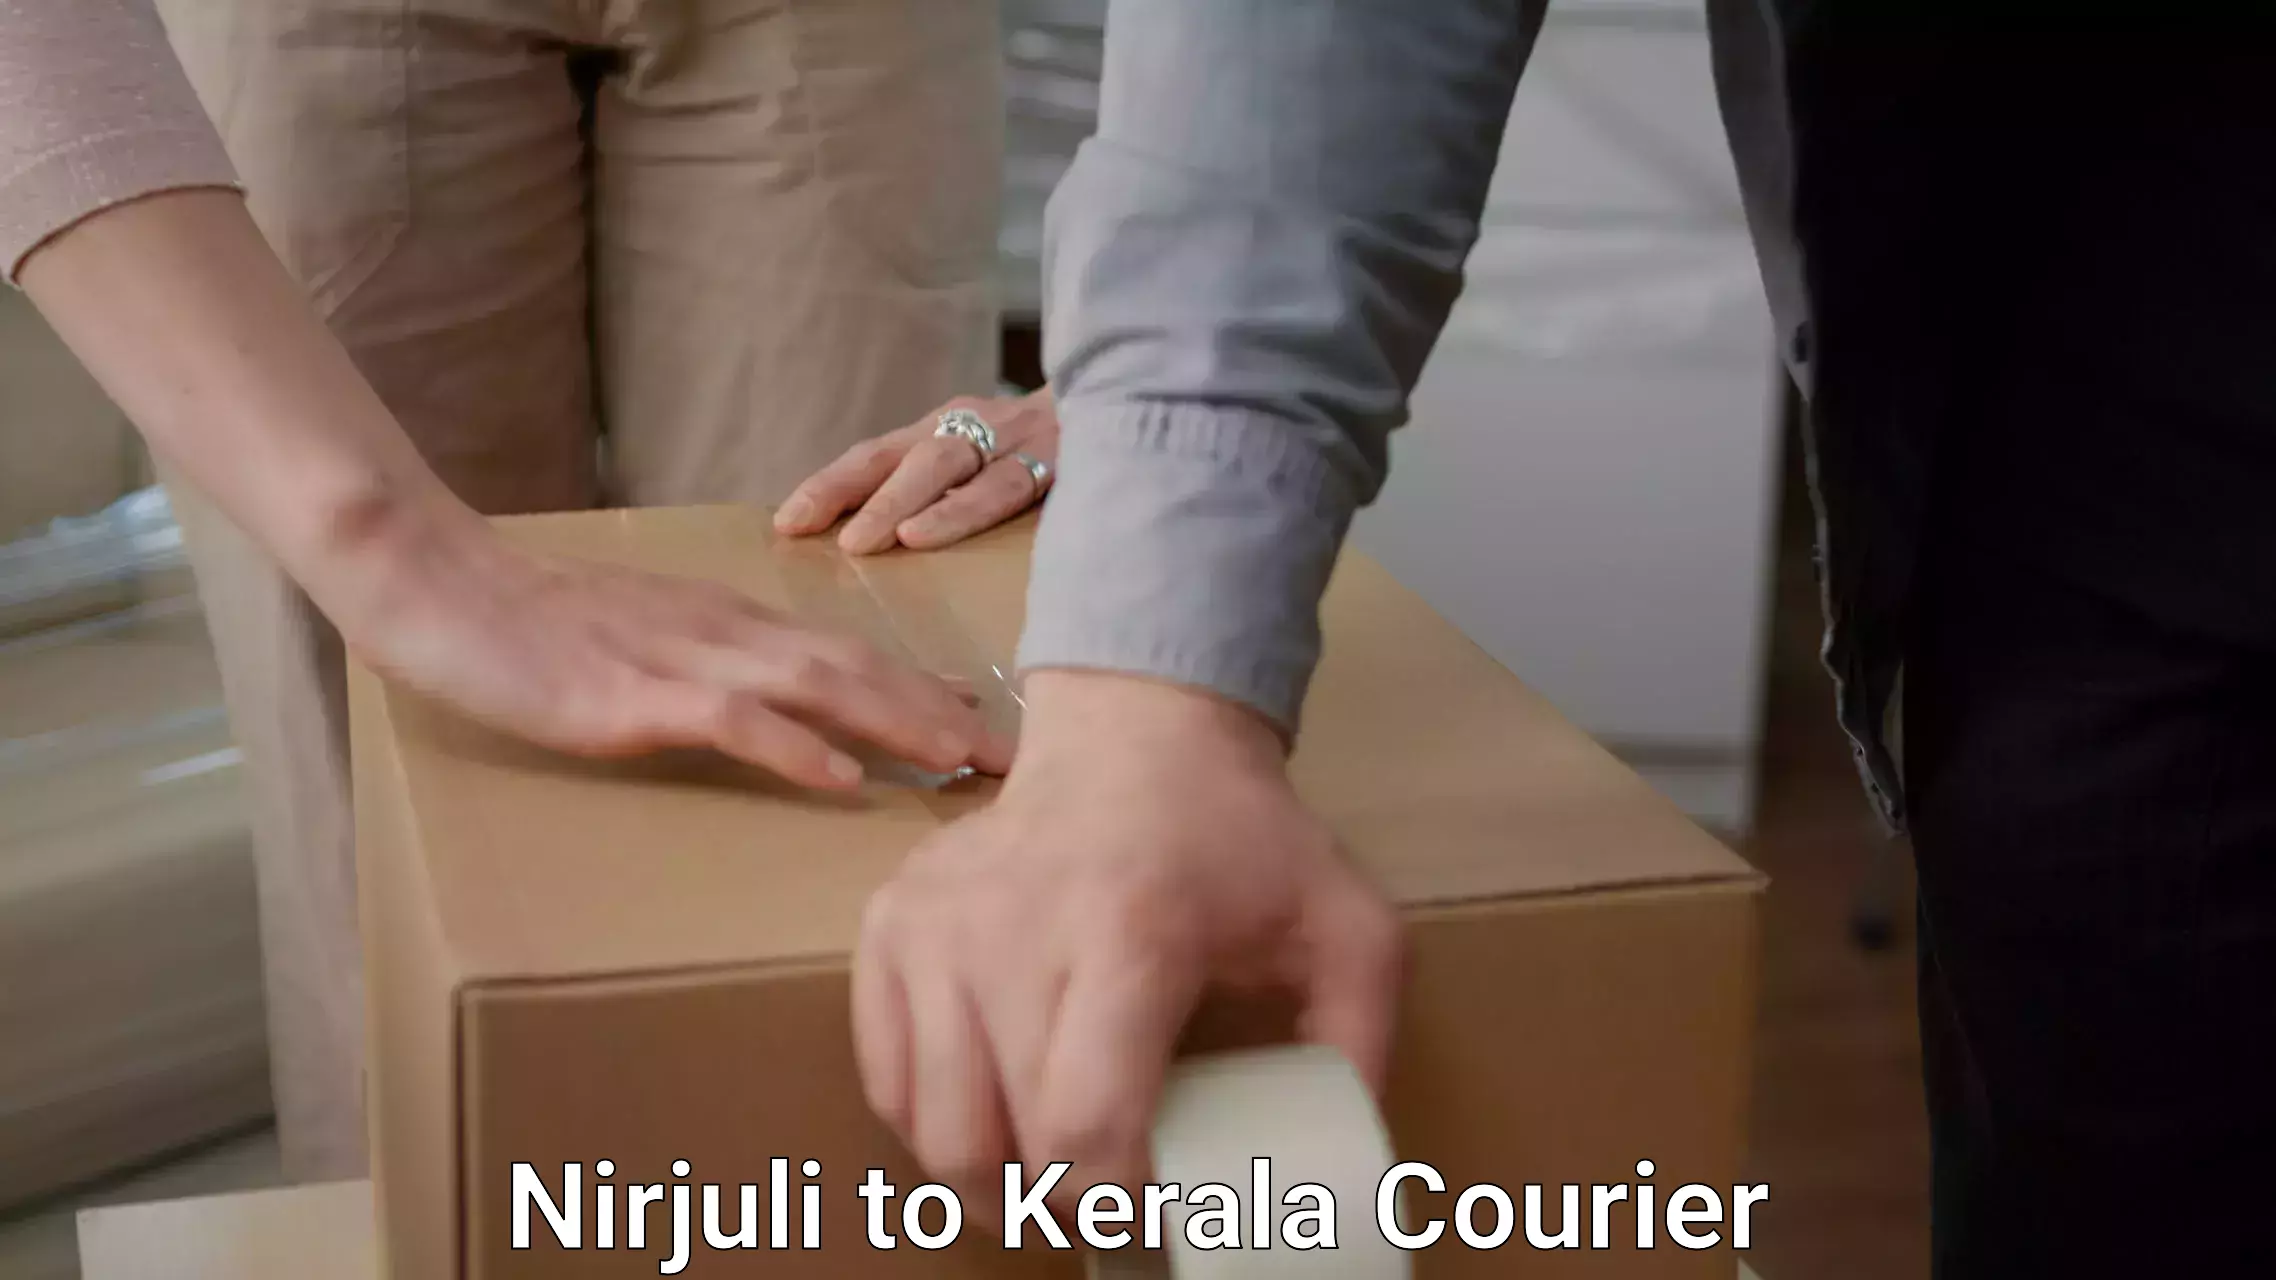 Furniture transport specialists Nirjuli to Kerala